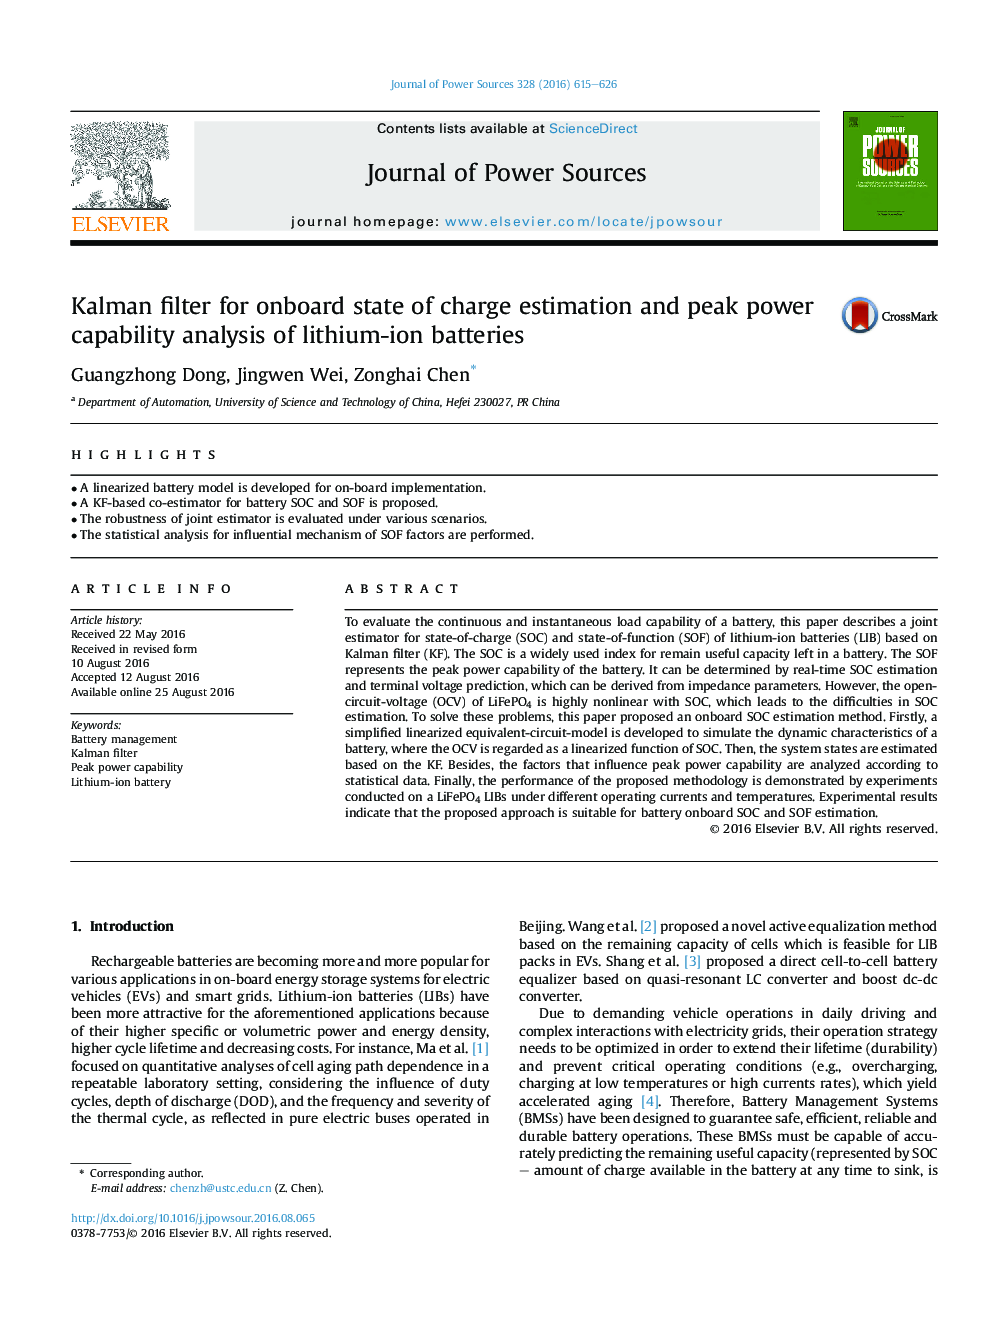 فیلتر کالمن برای ارزیابی وضعیت شارژ و تجزیه و تحلیل توانایی حداکثر از باتری های لیتیوم یون 